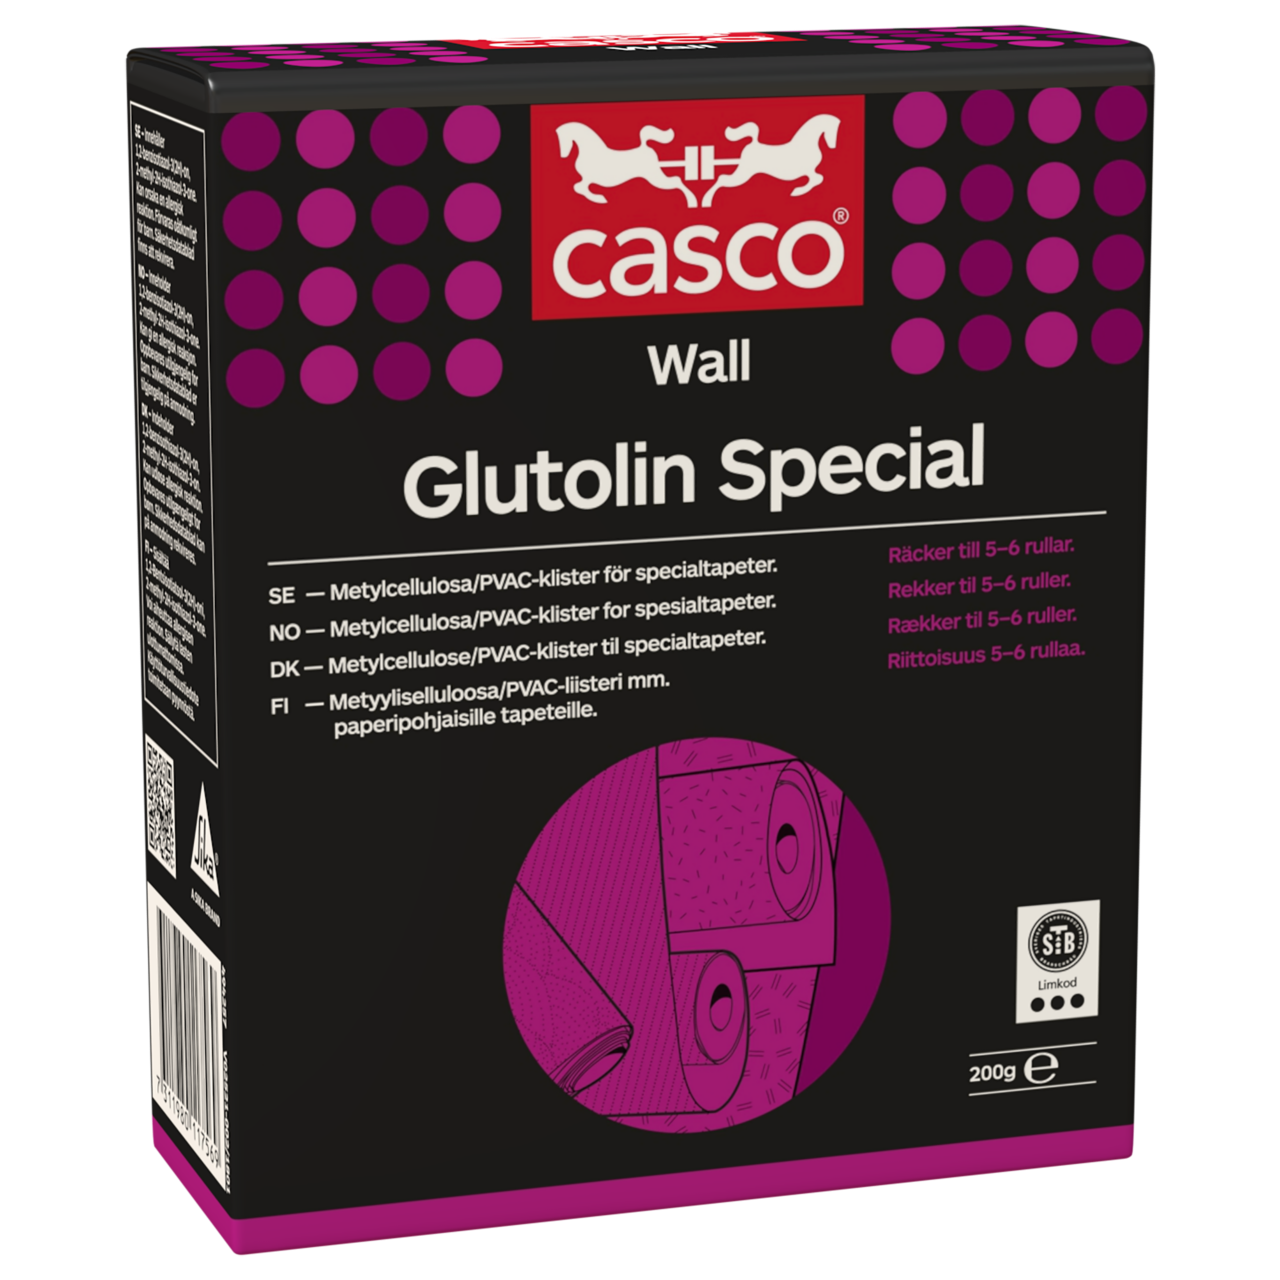 Casco Glutolin Special